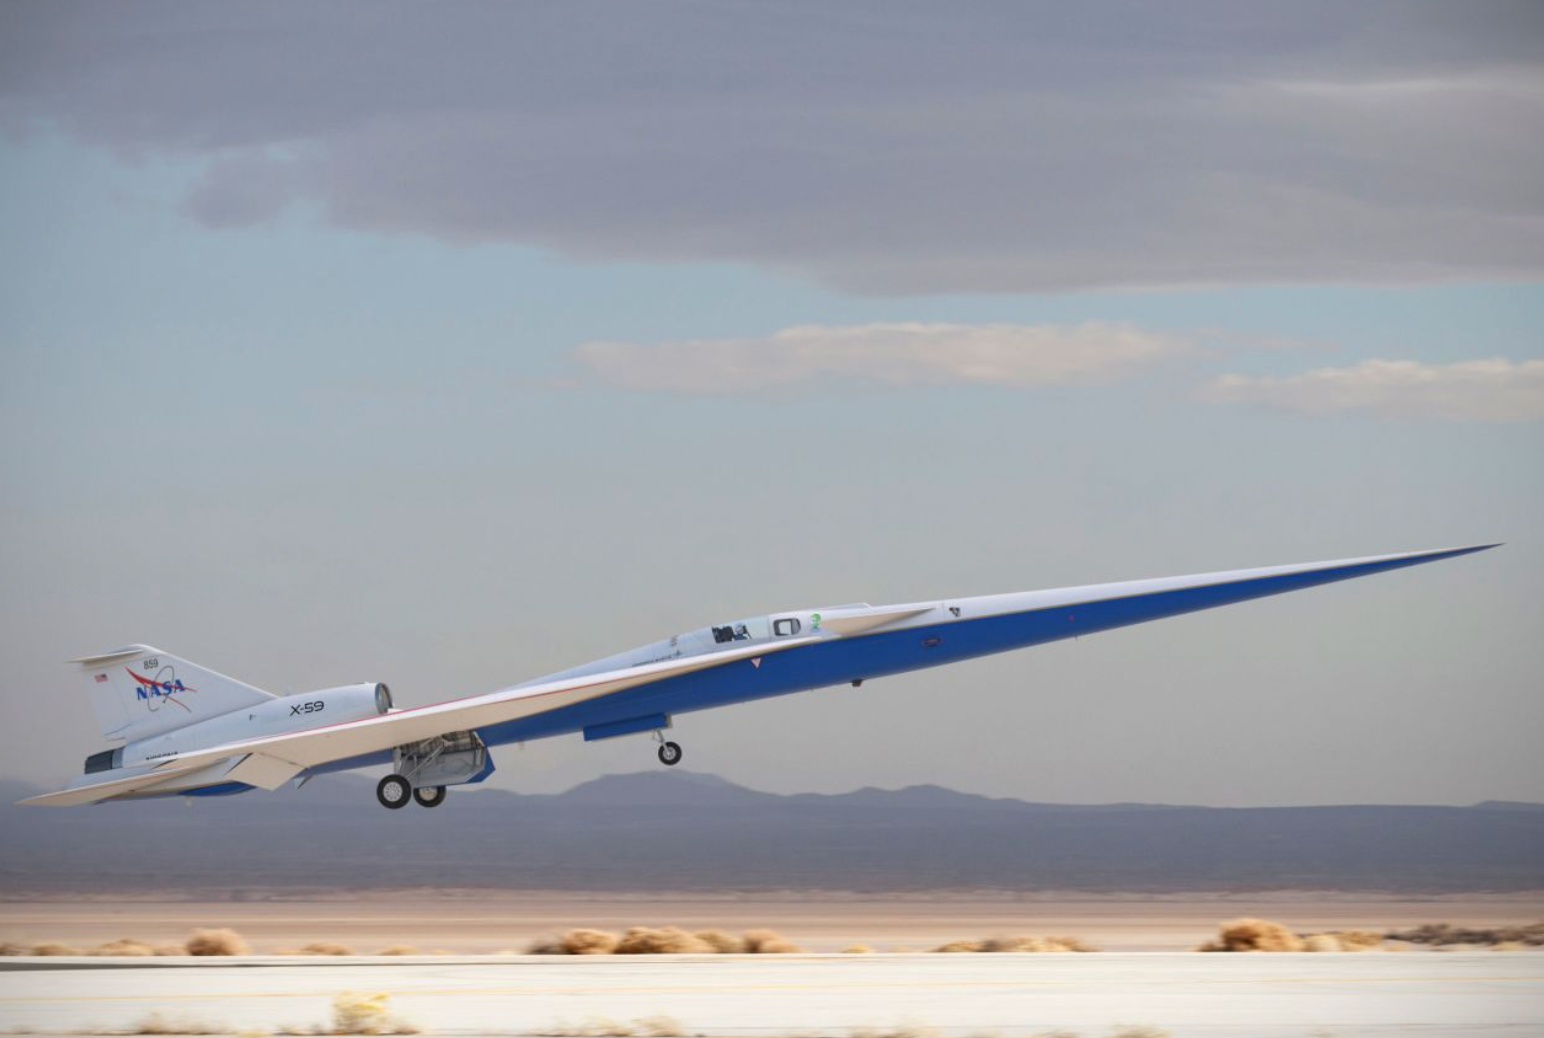 Máy bay siêu thanh X-59 của NASA đã sẵn sàng bay thử nghiệm. Ảnh: Lockheed Martin